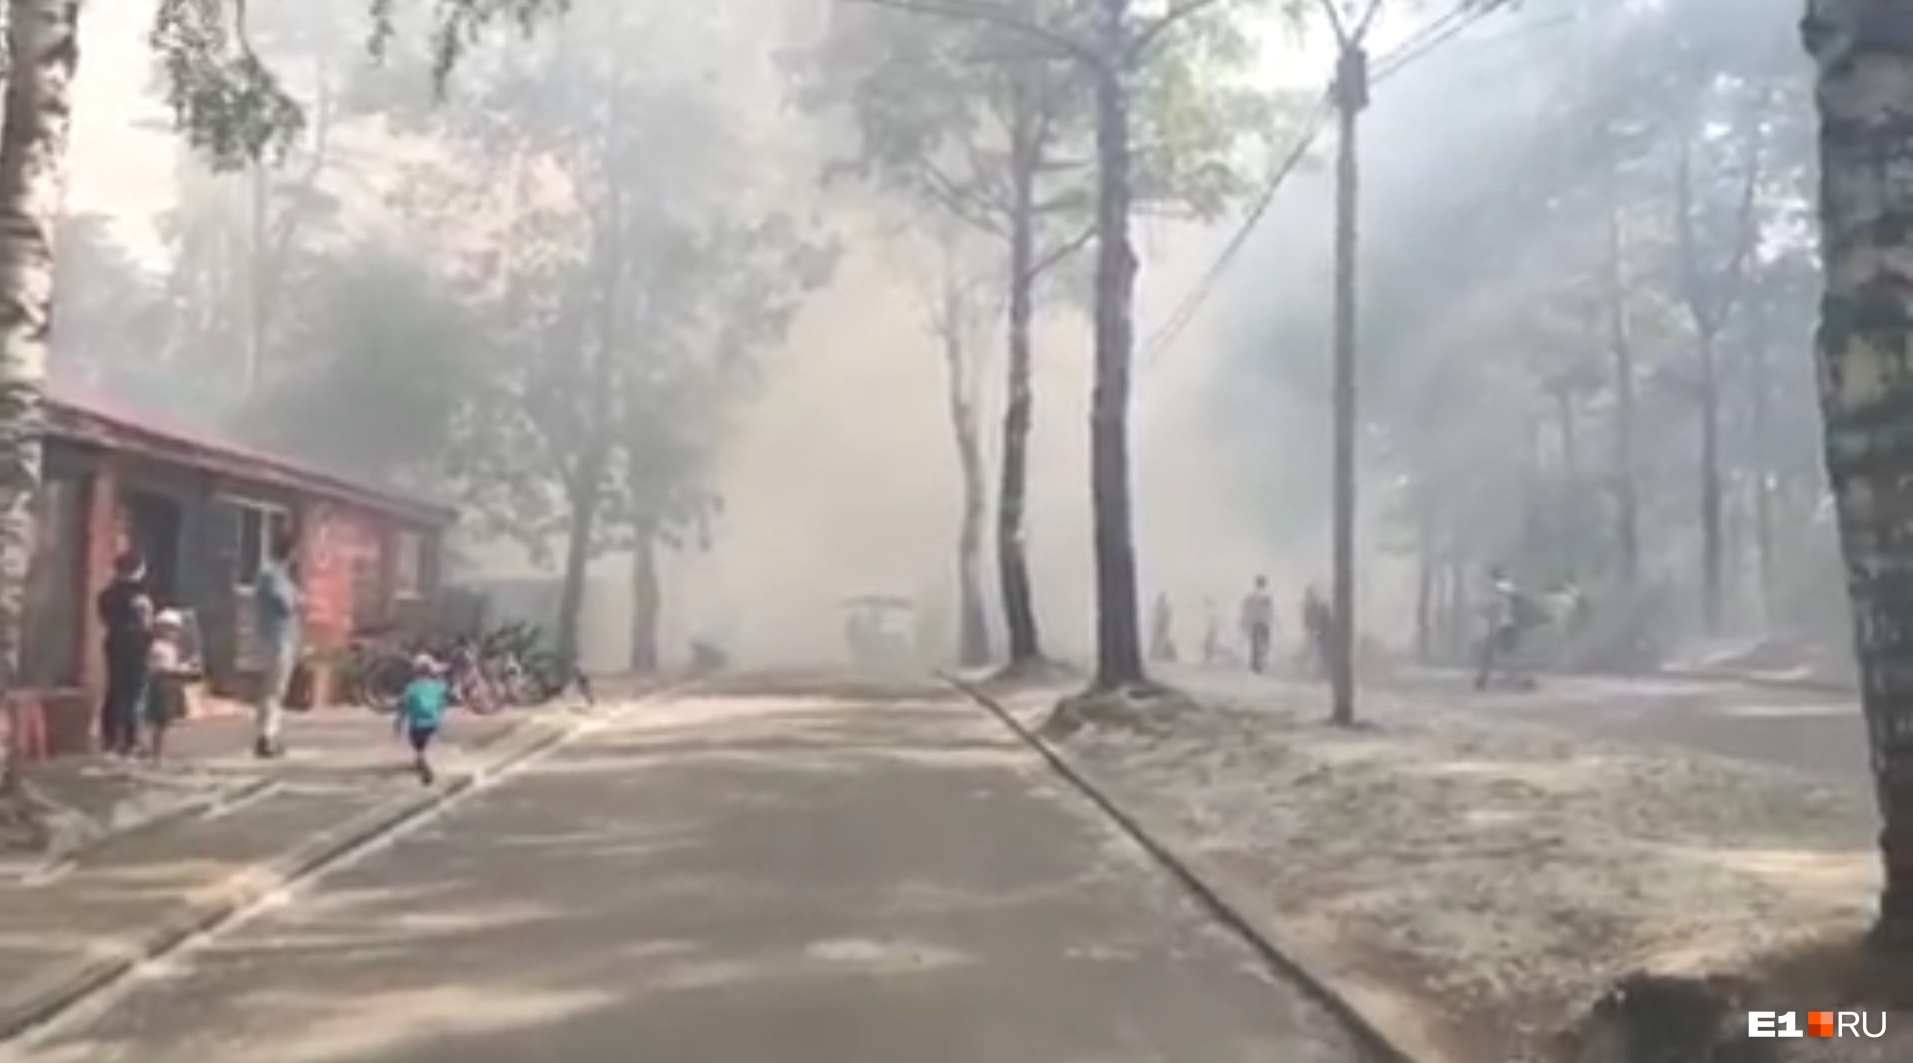 «Что-то взрывается»: в Екатеринбурге горит парк Маяковского, все вокруг затянуло дымом